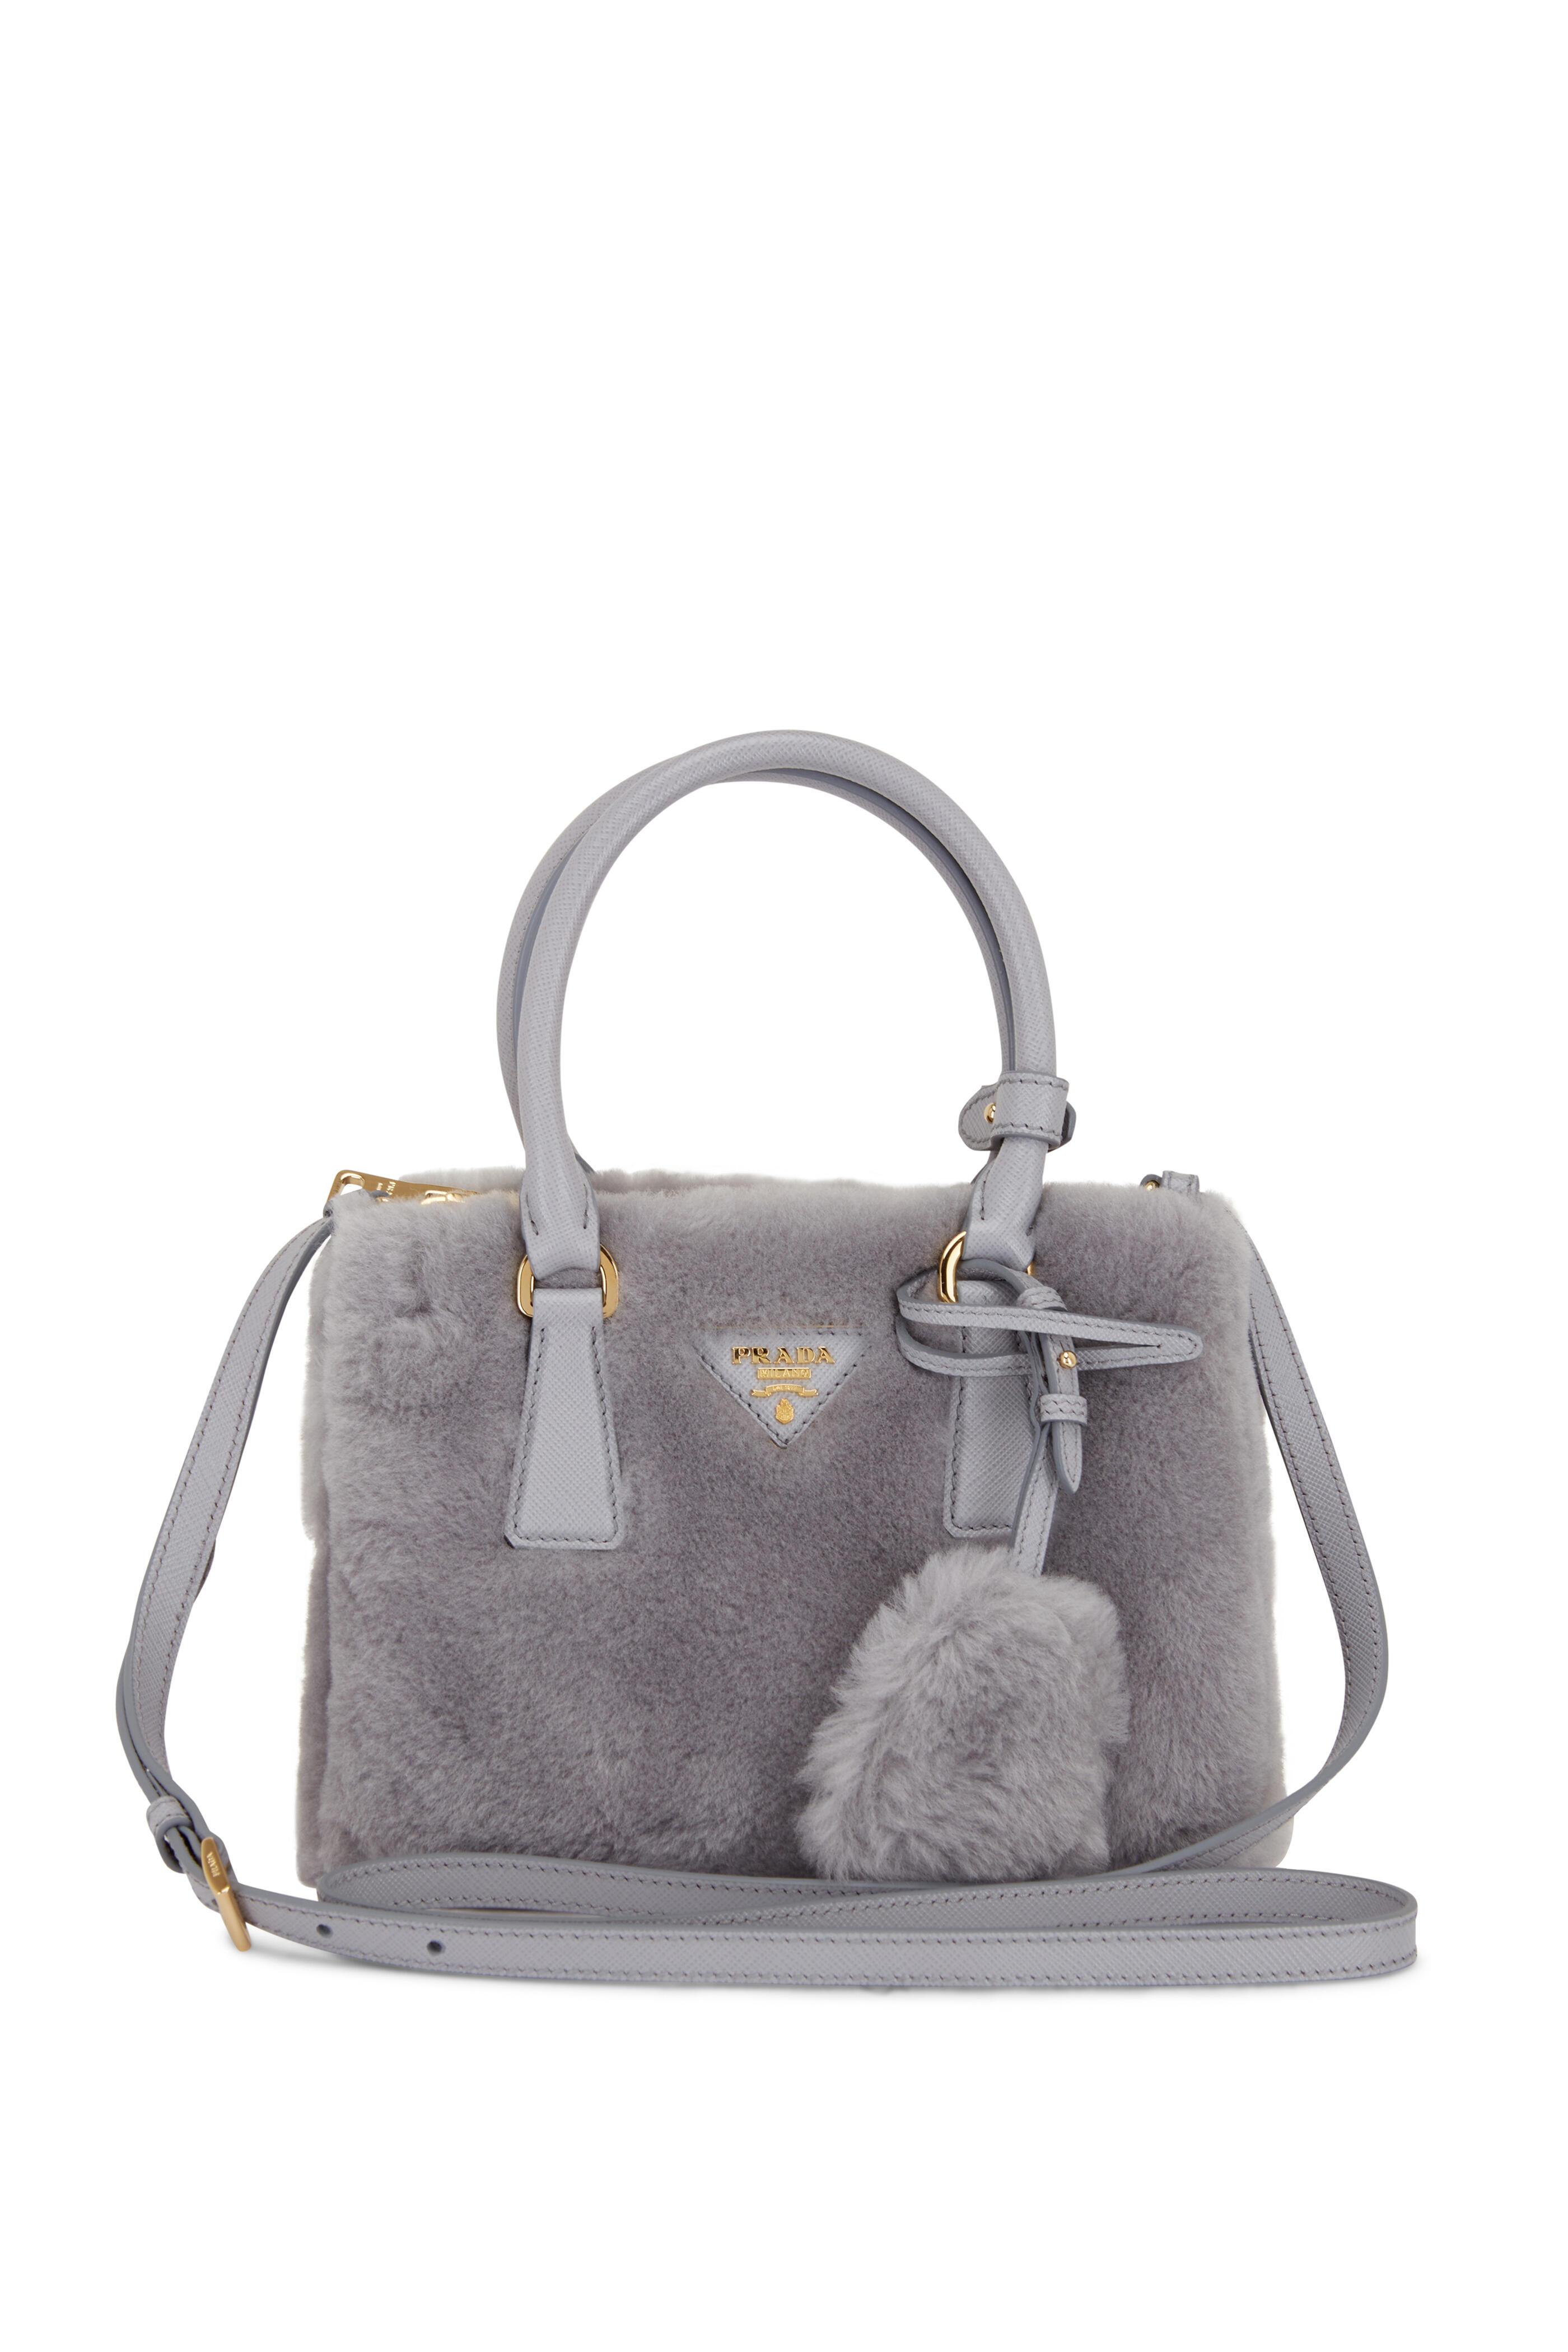 Prada Gray Galleria Saffiano Tote Bag with Silver Hardware